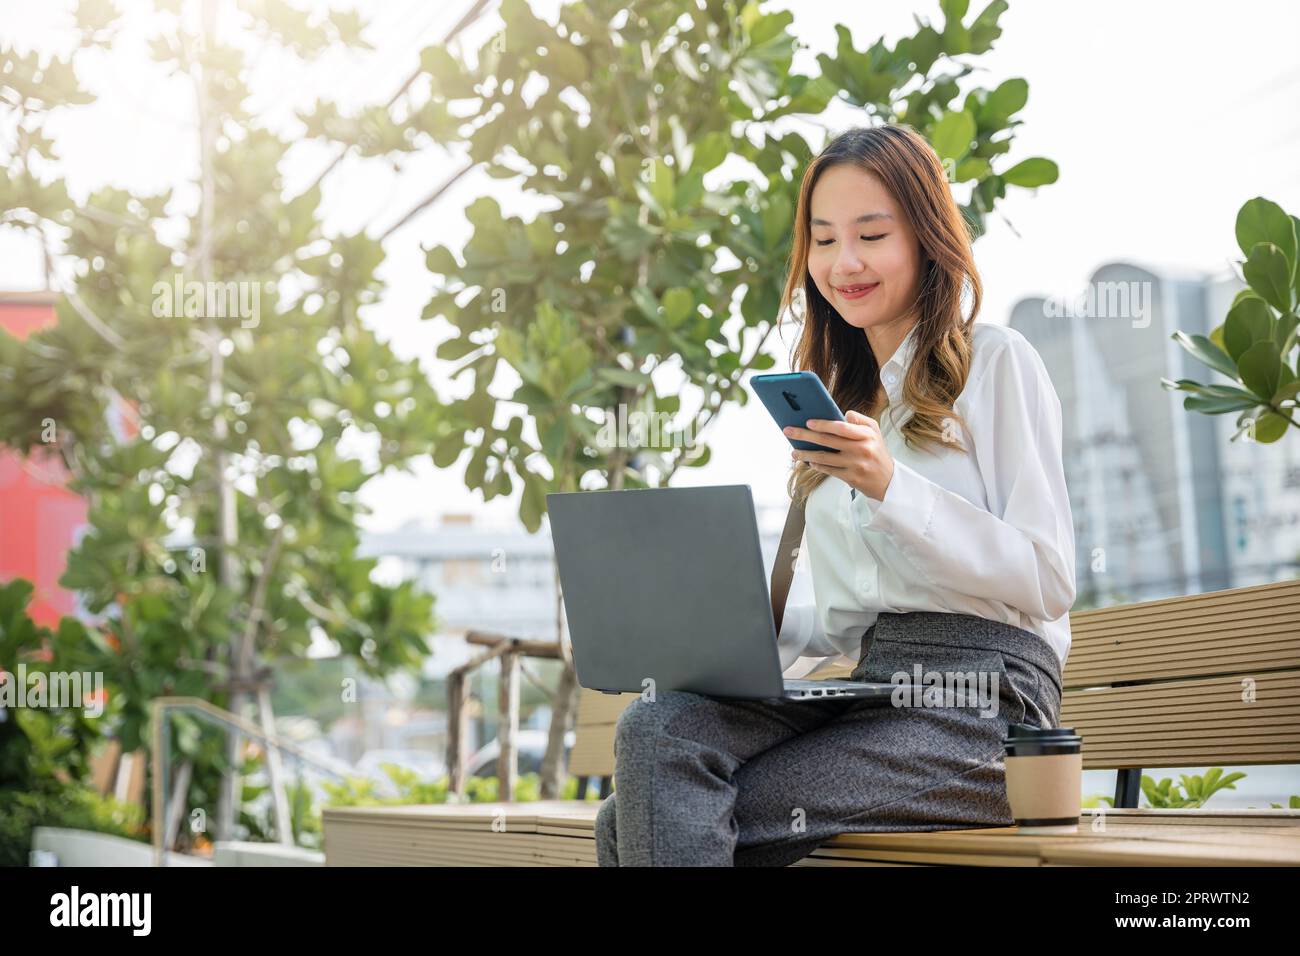 giovane donna che lavora con un computer portatile e utilizza uno smartphone mobile all'esterno dell'edificio Foto Stock